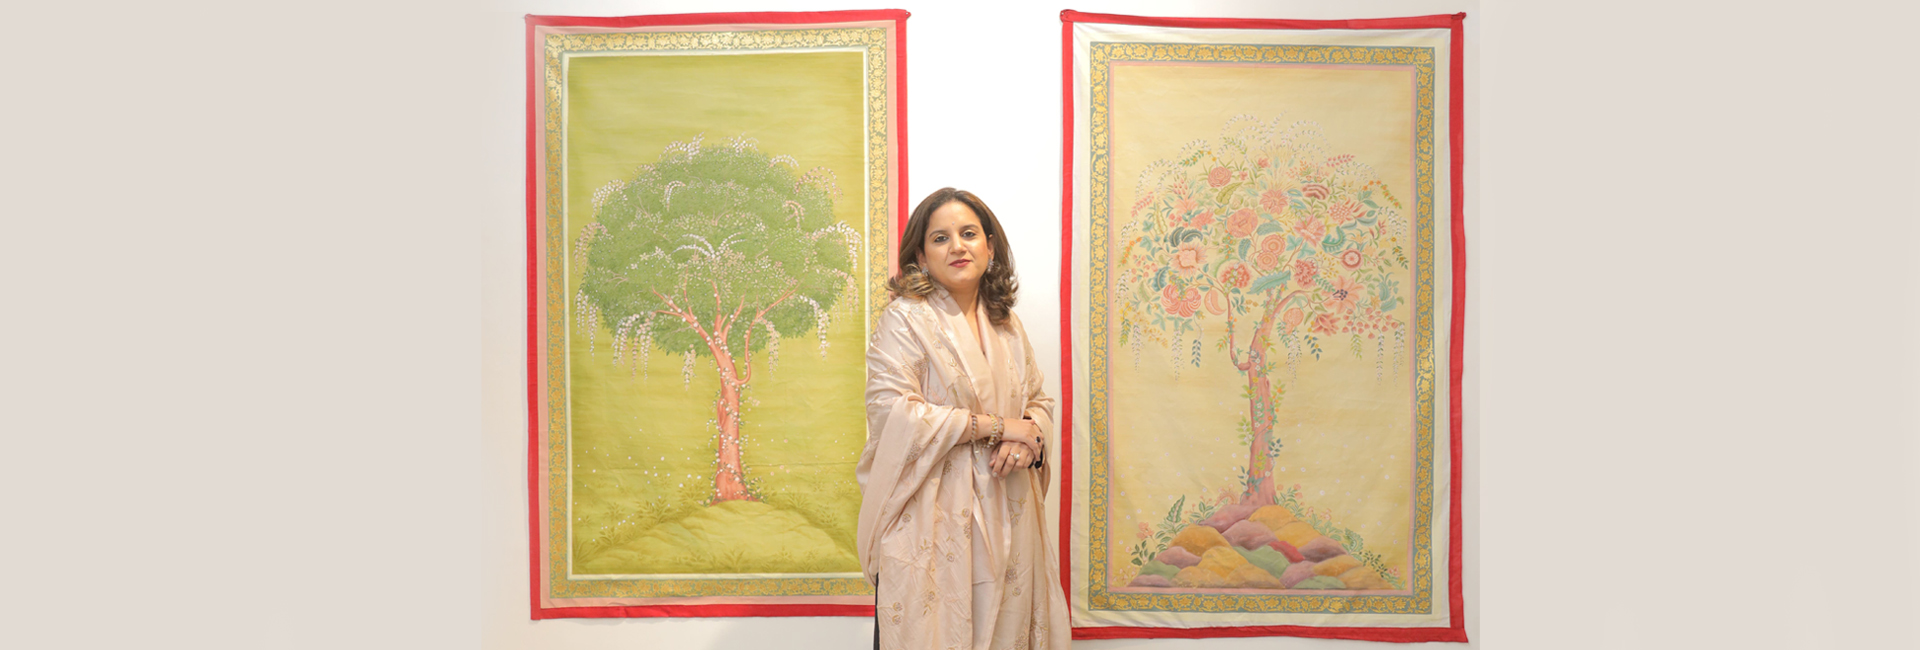 The Royal Diaries: la princesa Vaishnavi de Kishangarh está trabajando para revivir el arte perdido